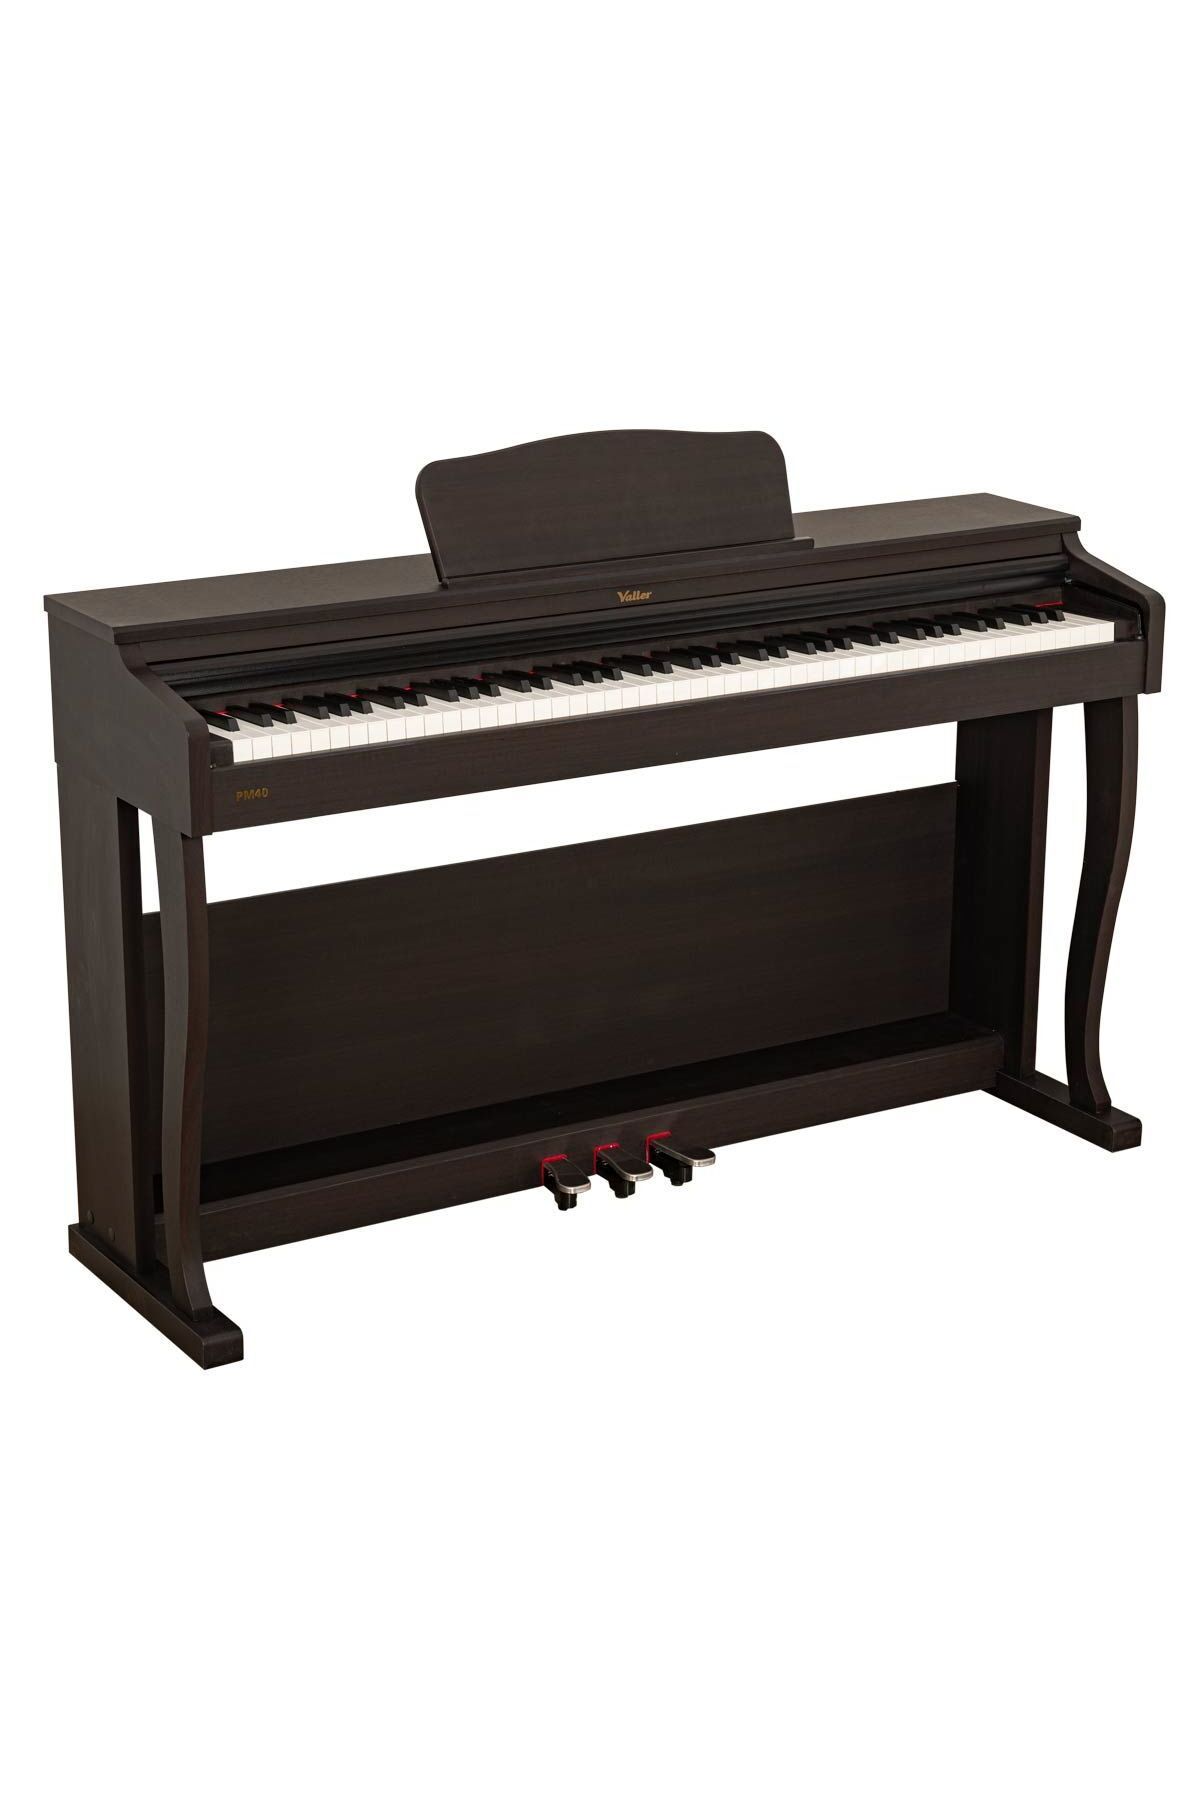 VALLER PM40 Tuş Hassasiyetli Usb Bağlantılı Farklı Renk Seçenekli Dijital Piyano-Rosewood